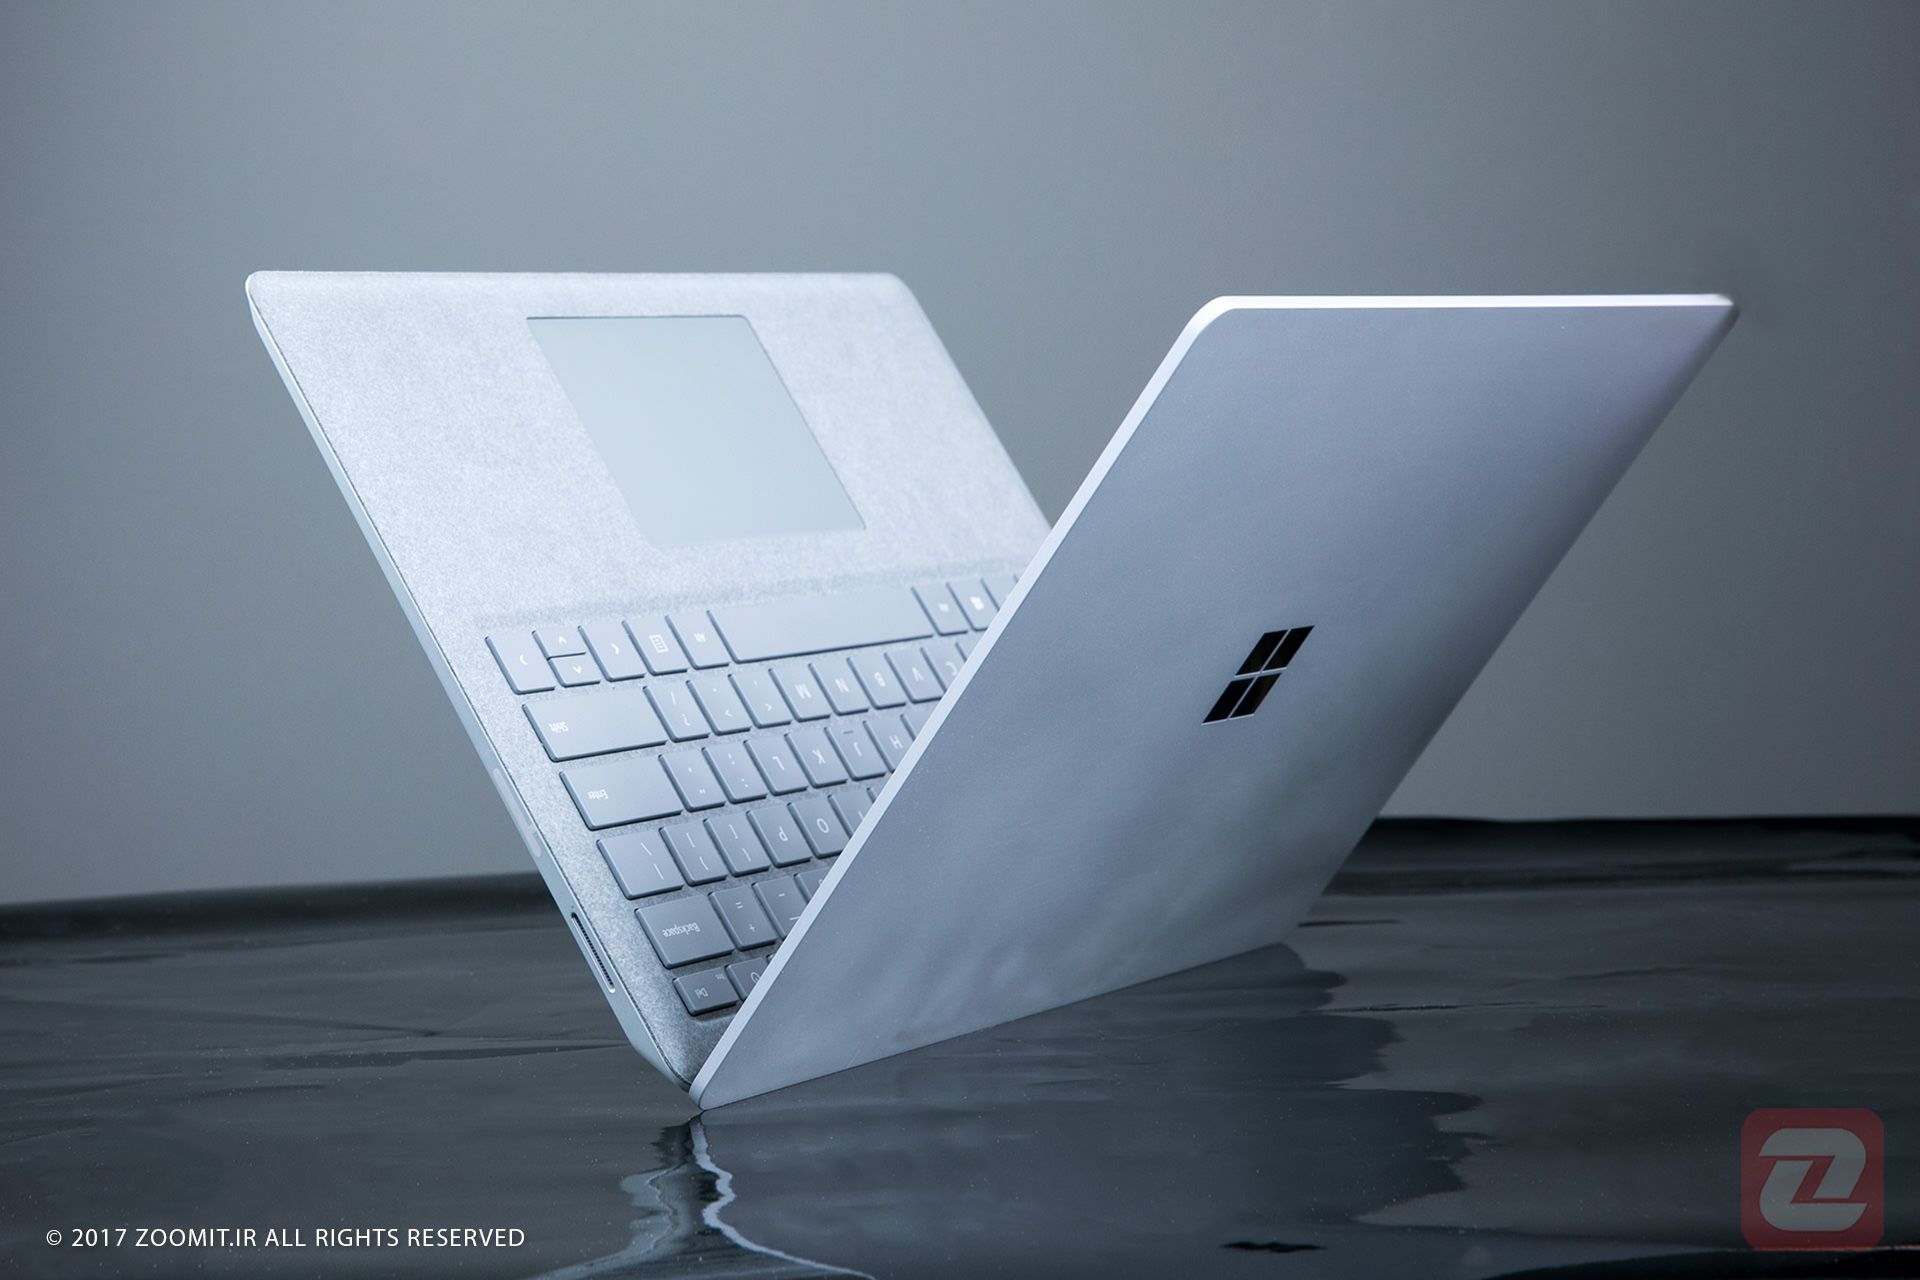 مرجع متخصصين ايران سرفيس لپ تاپ / Surface Laptop